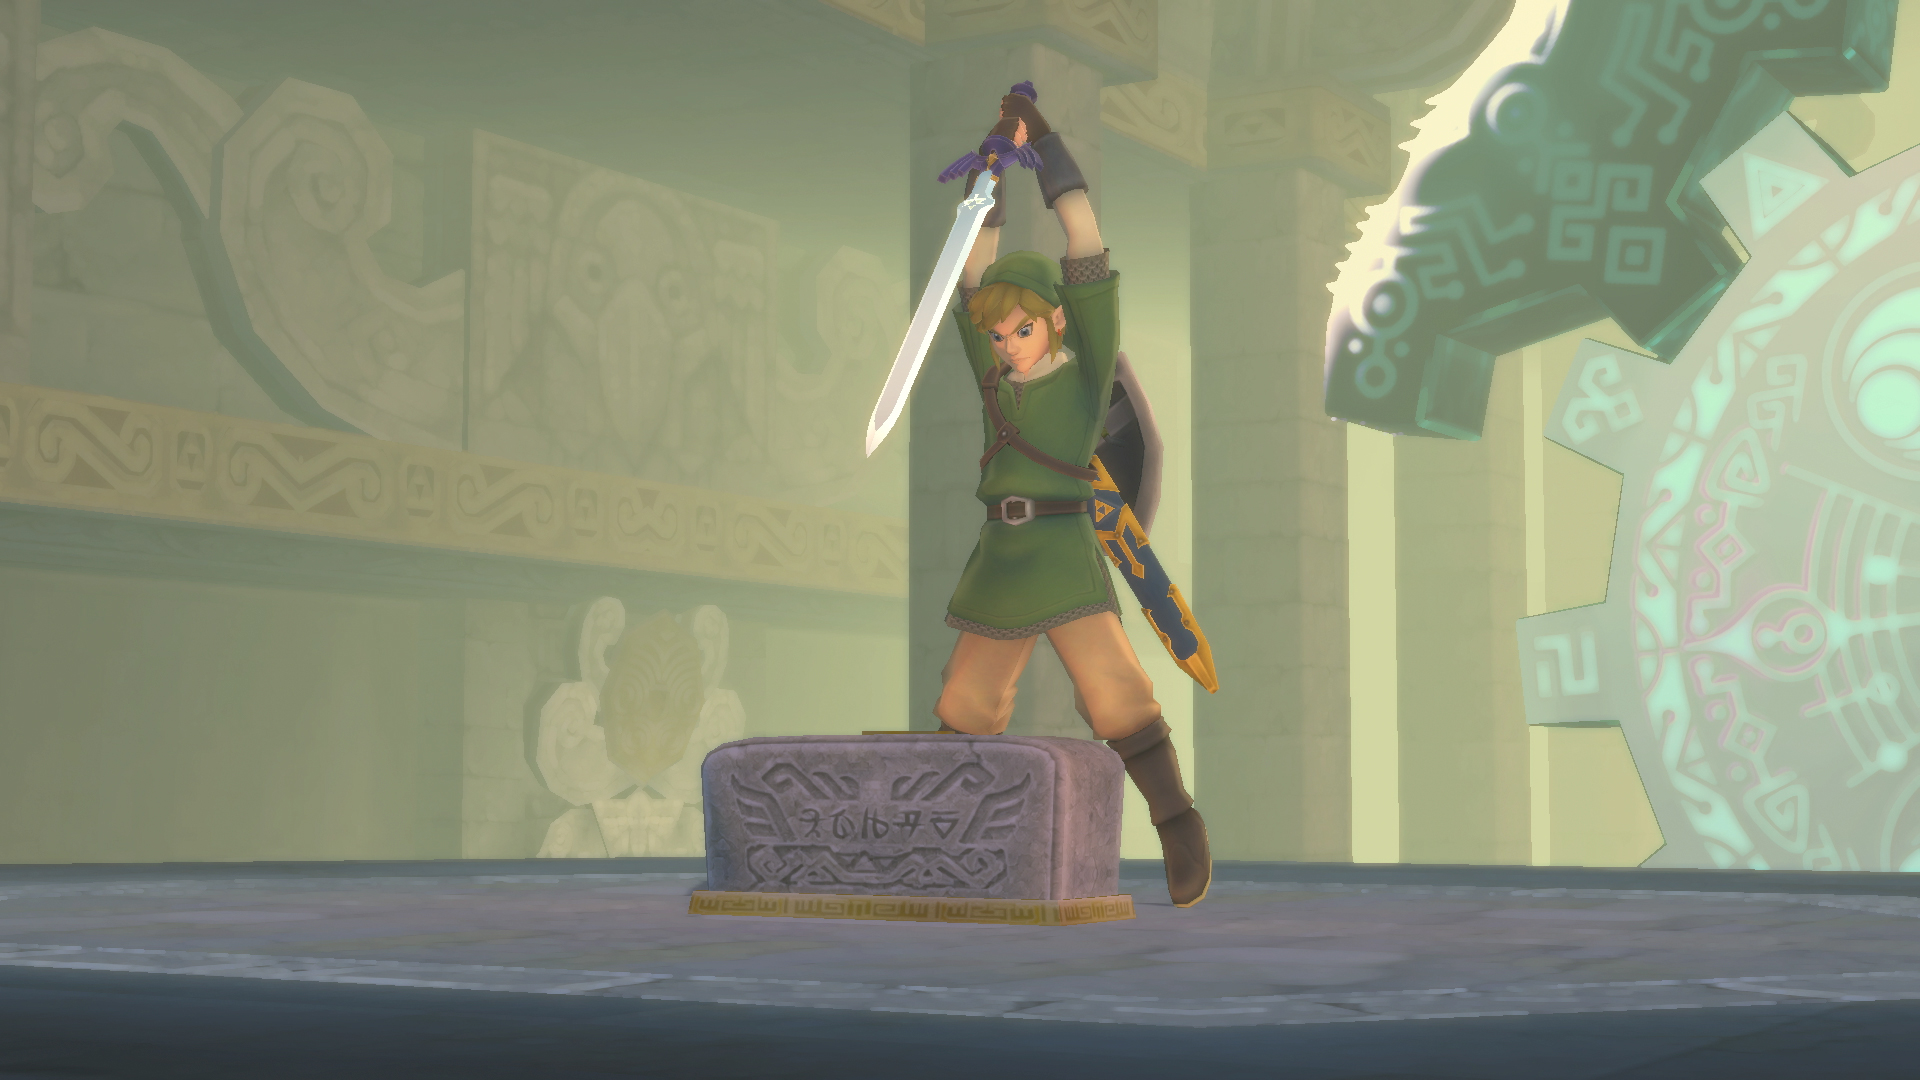 The Legend of Zelda - Best Buy